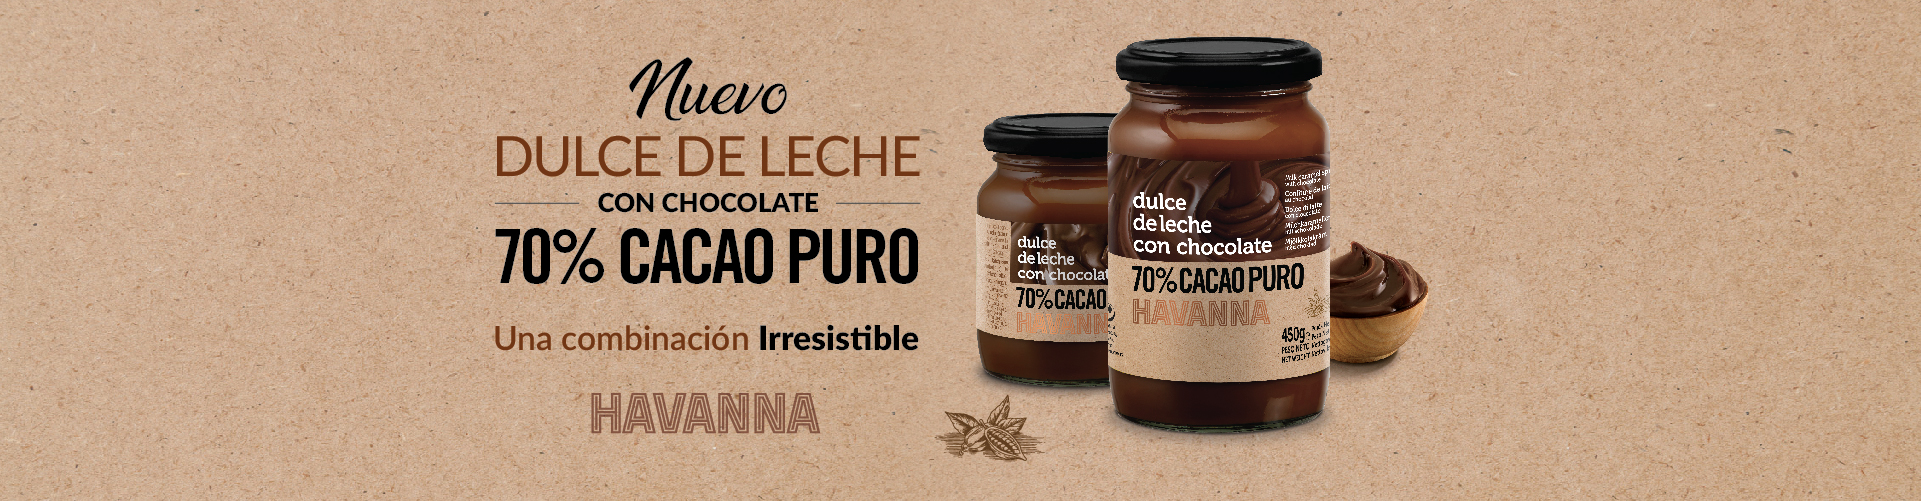 Nuevo Dulce de Leche con Chocolate 70% Cacao. ¡Una combinación irresistible! Hacemos envíos a toda Europa.